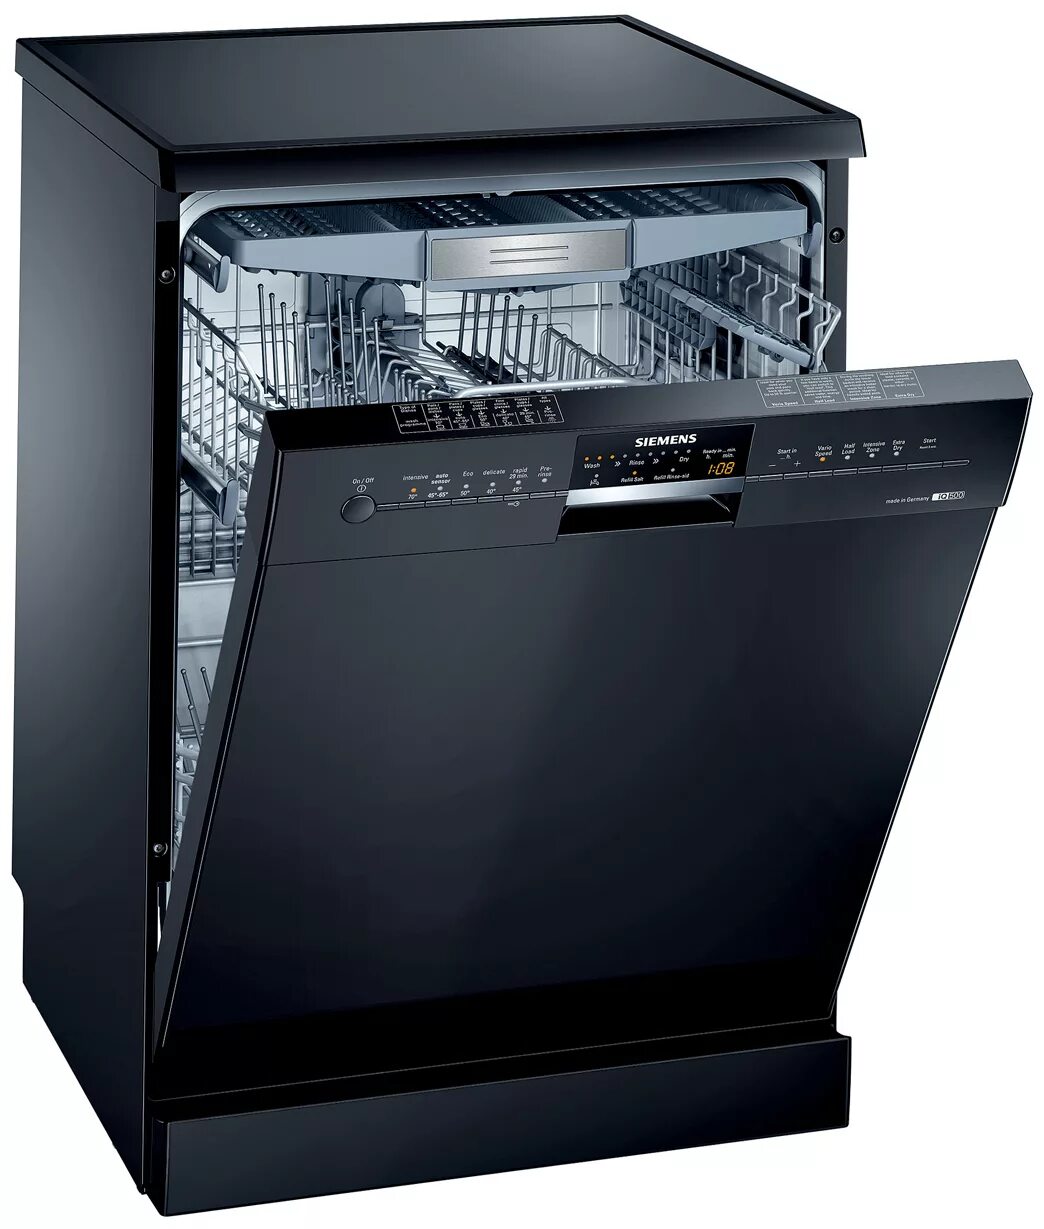 Посудомоечная машина Siemens SN 25m888. Siemens 500 посудомоечная машина. Siemens посудомоечная машина sn44d201sk/34. Посудомойка Борк встраиваемая. Посудомоечные машины 3 комплекта